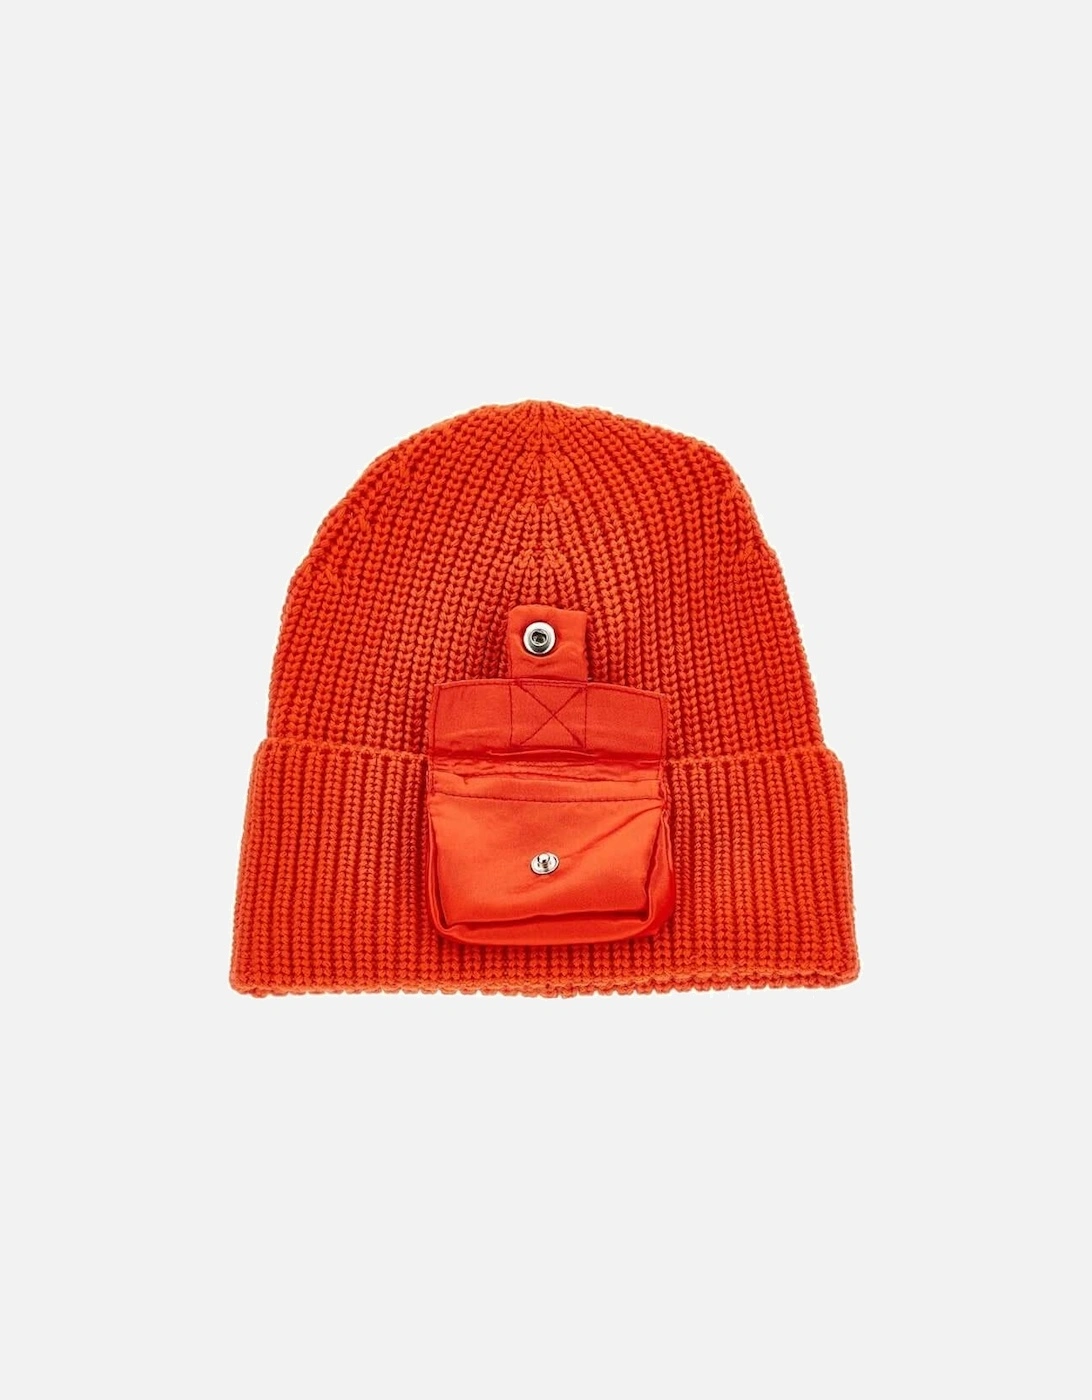 Girls Orange Hat